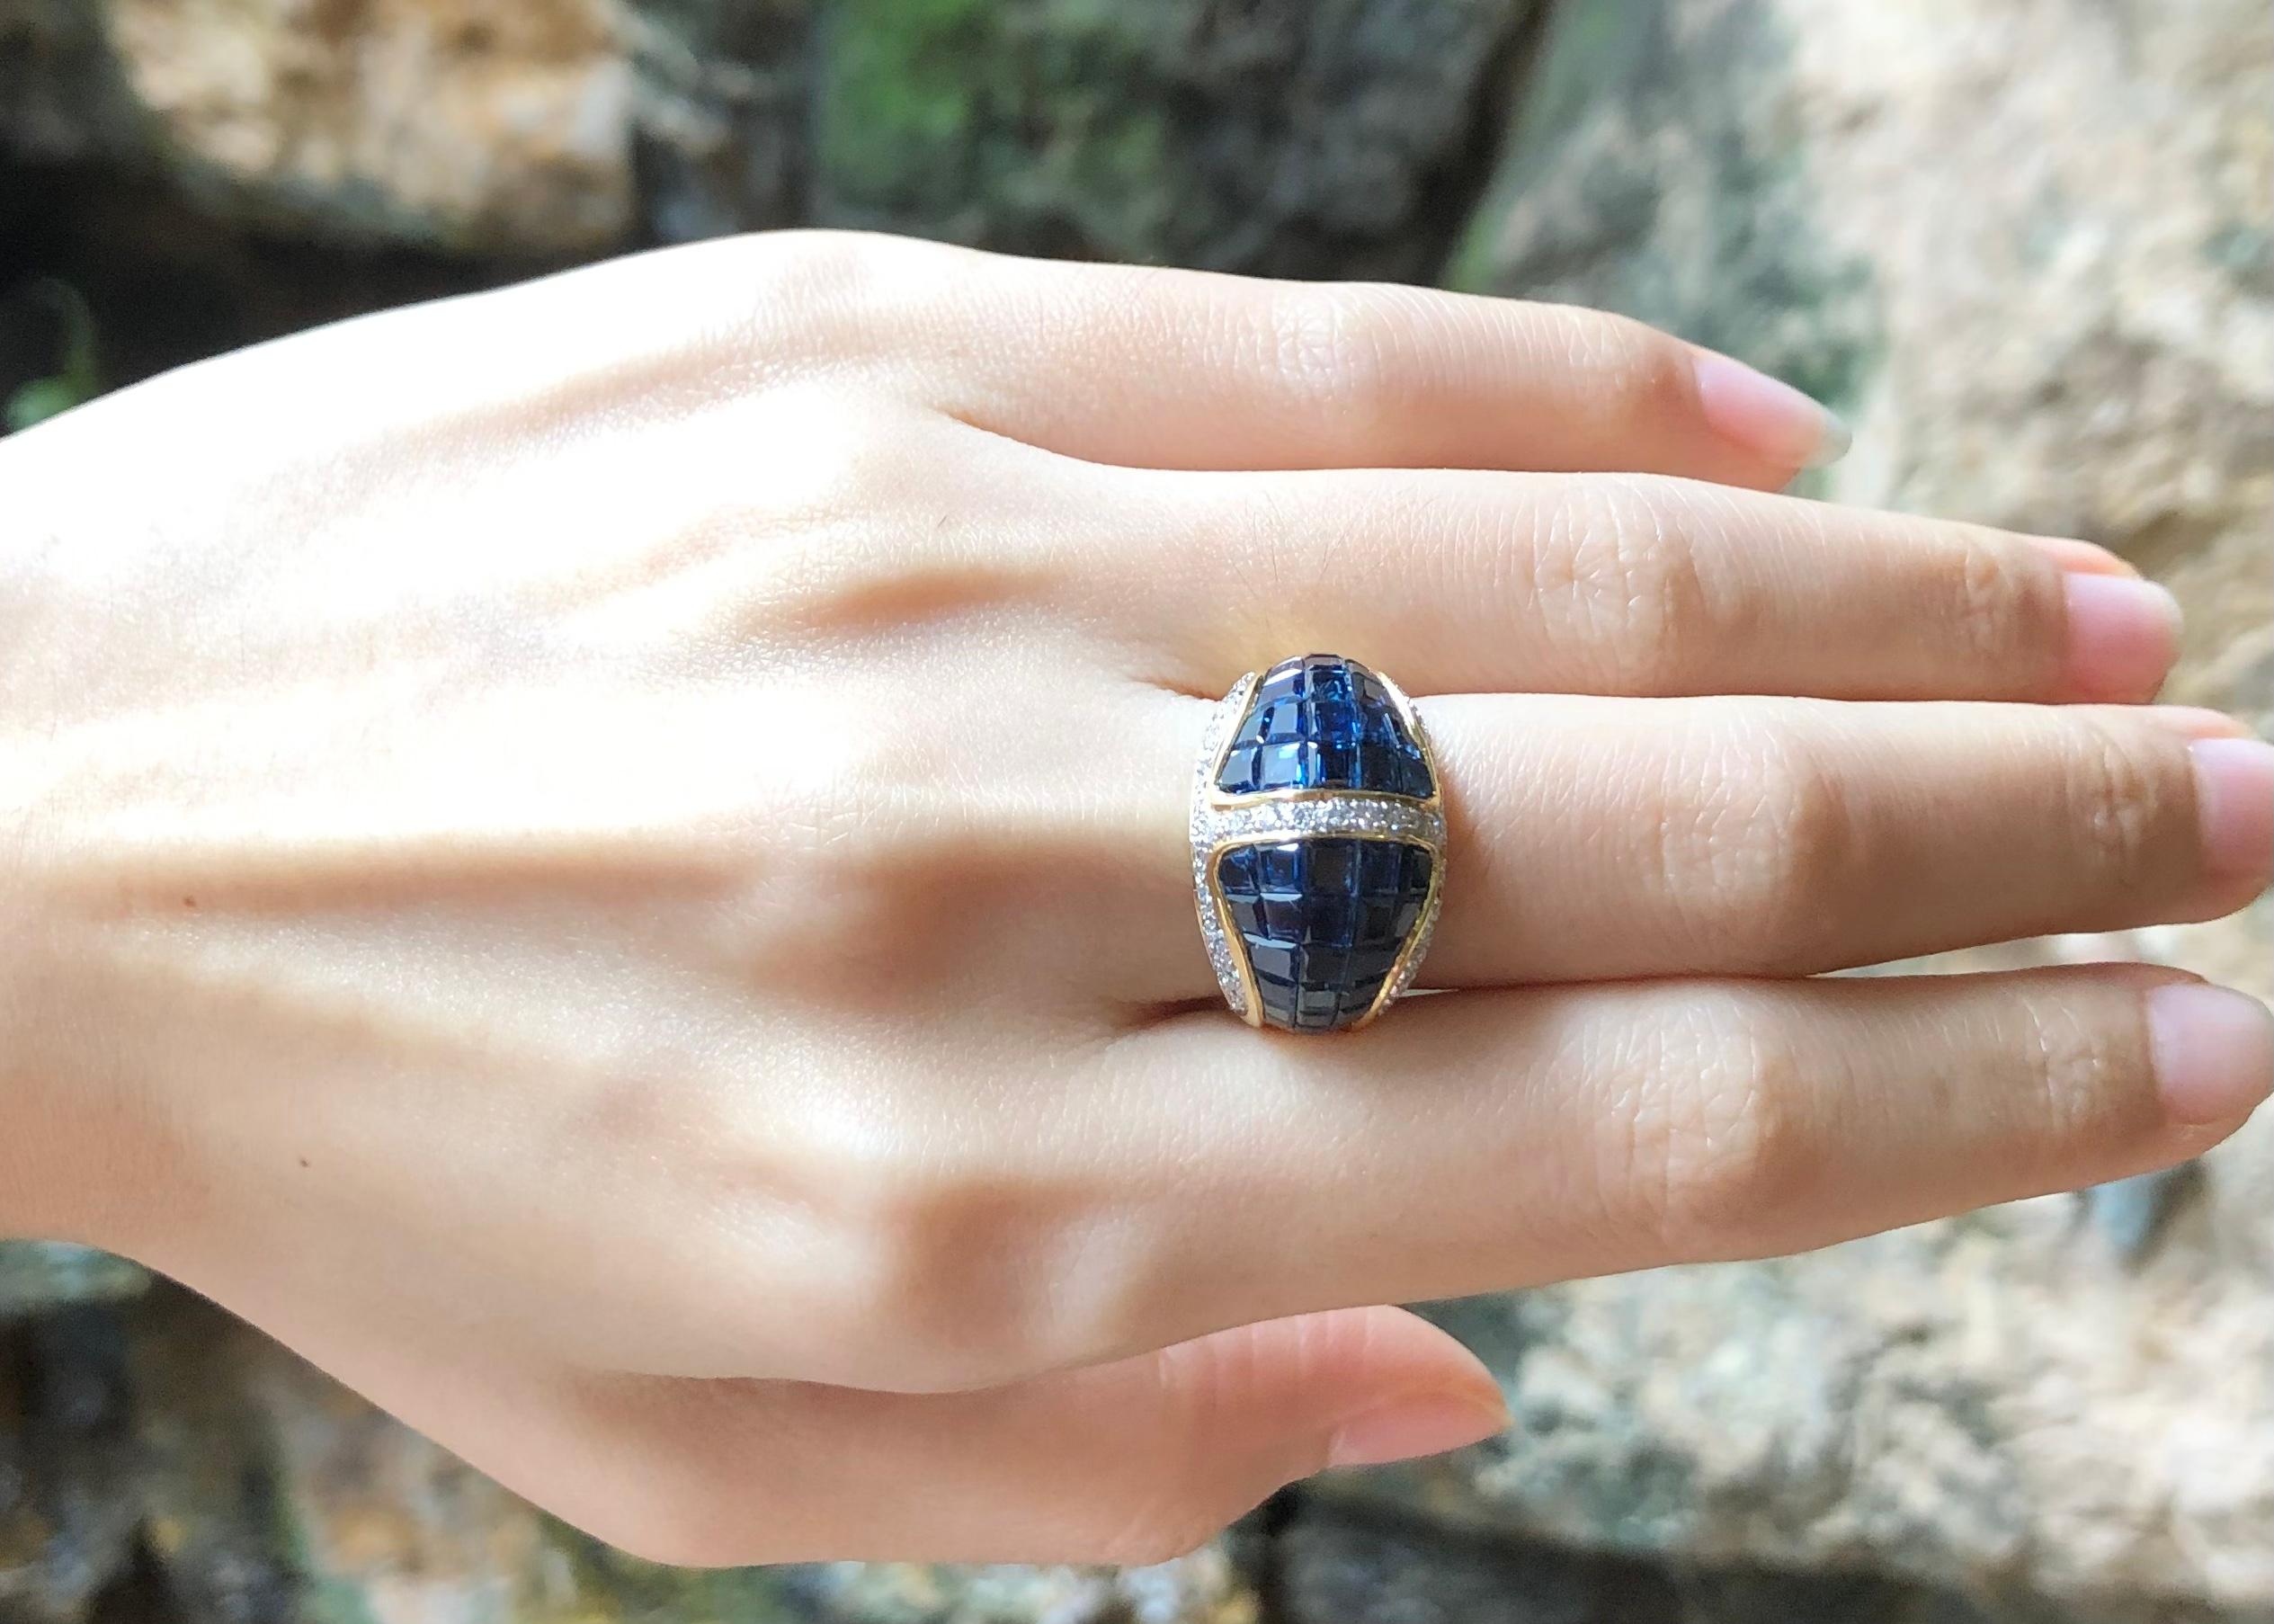 Blauer Saphir 10,54 Karat mit Diamant 0,57 Karat Ring in 18 Karat Goldfassung

Breite:  2.0 cm 
Länge: 1,4 cm
Ringgröße: 52
Gesamtgewicht: 10,54 Gramm


